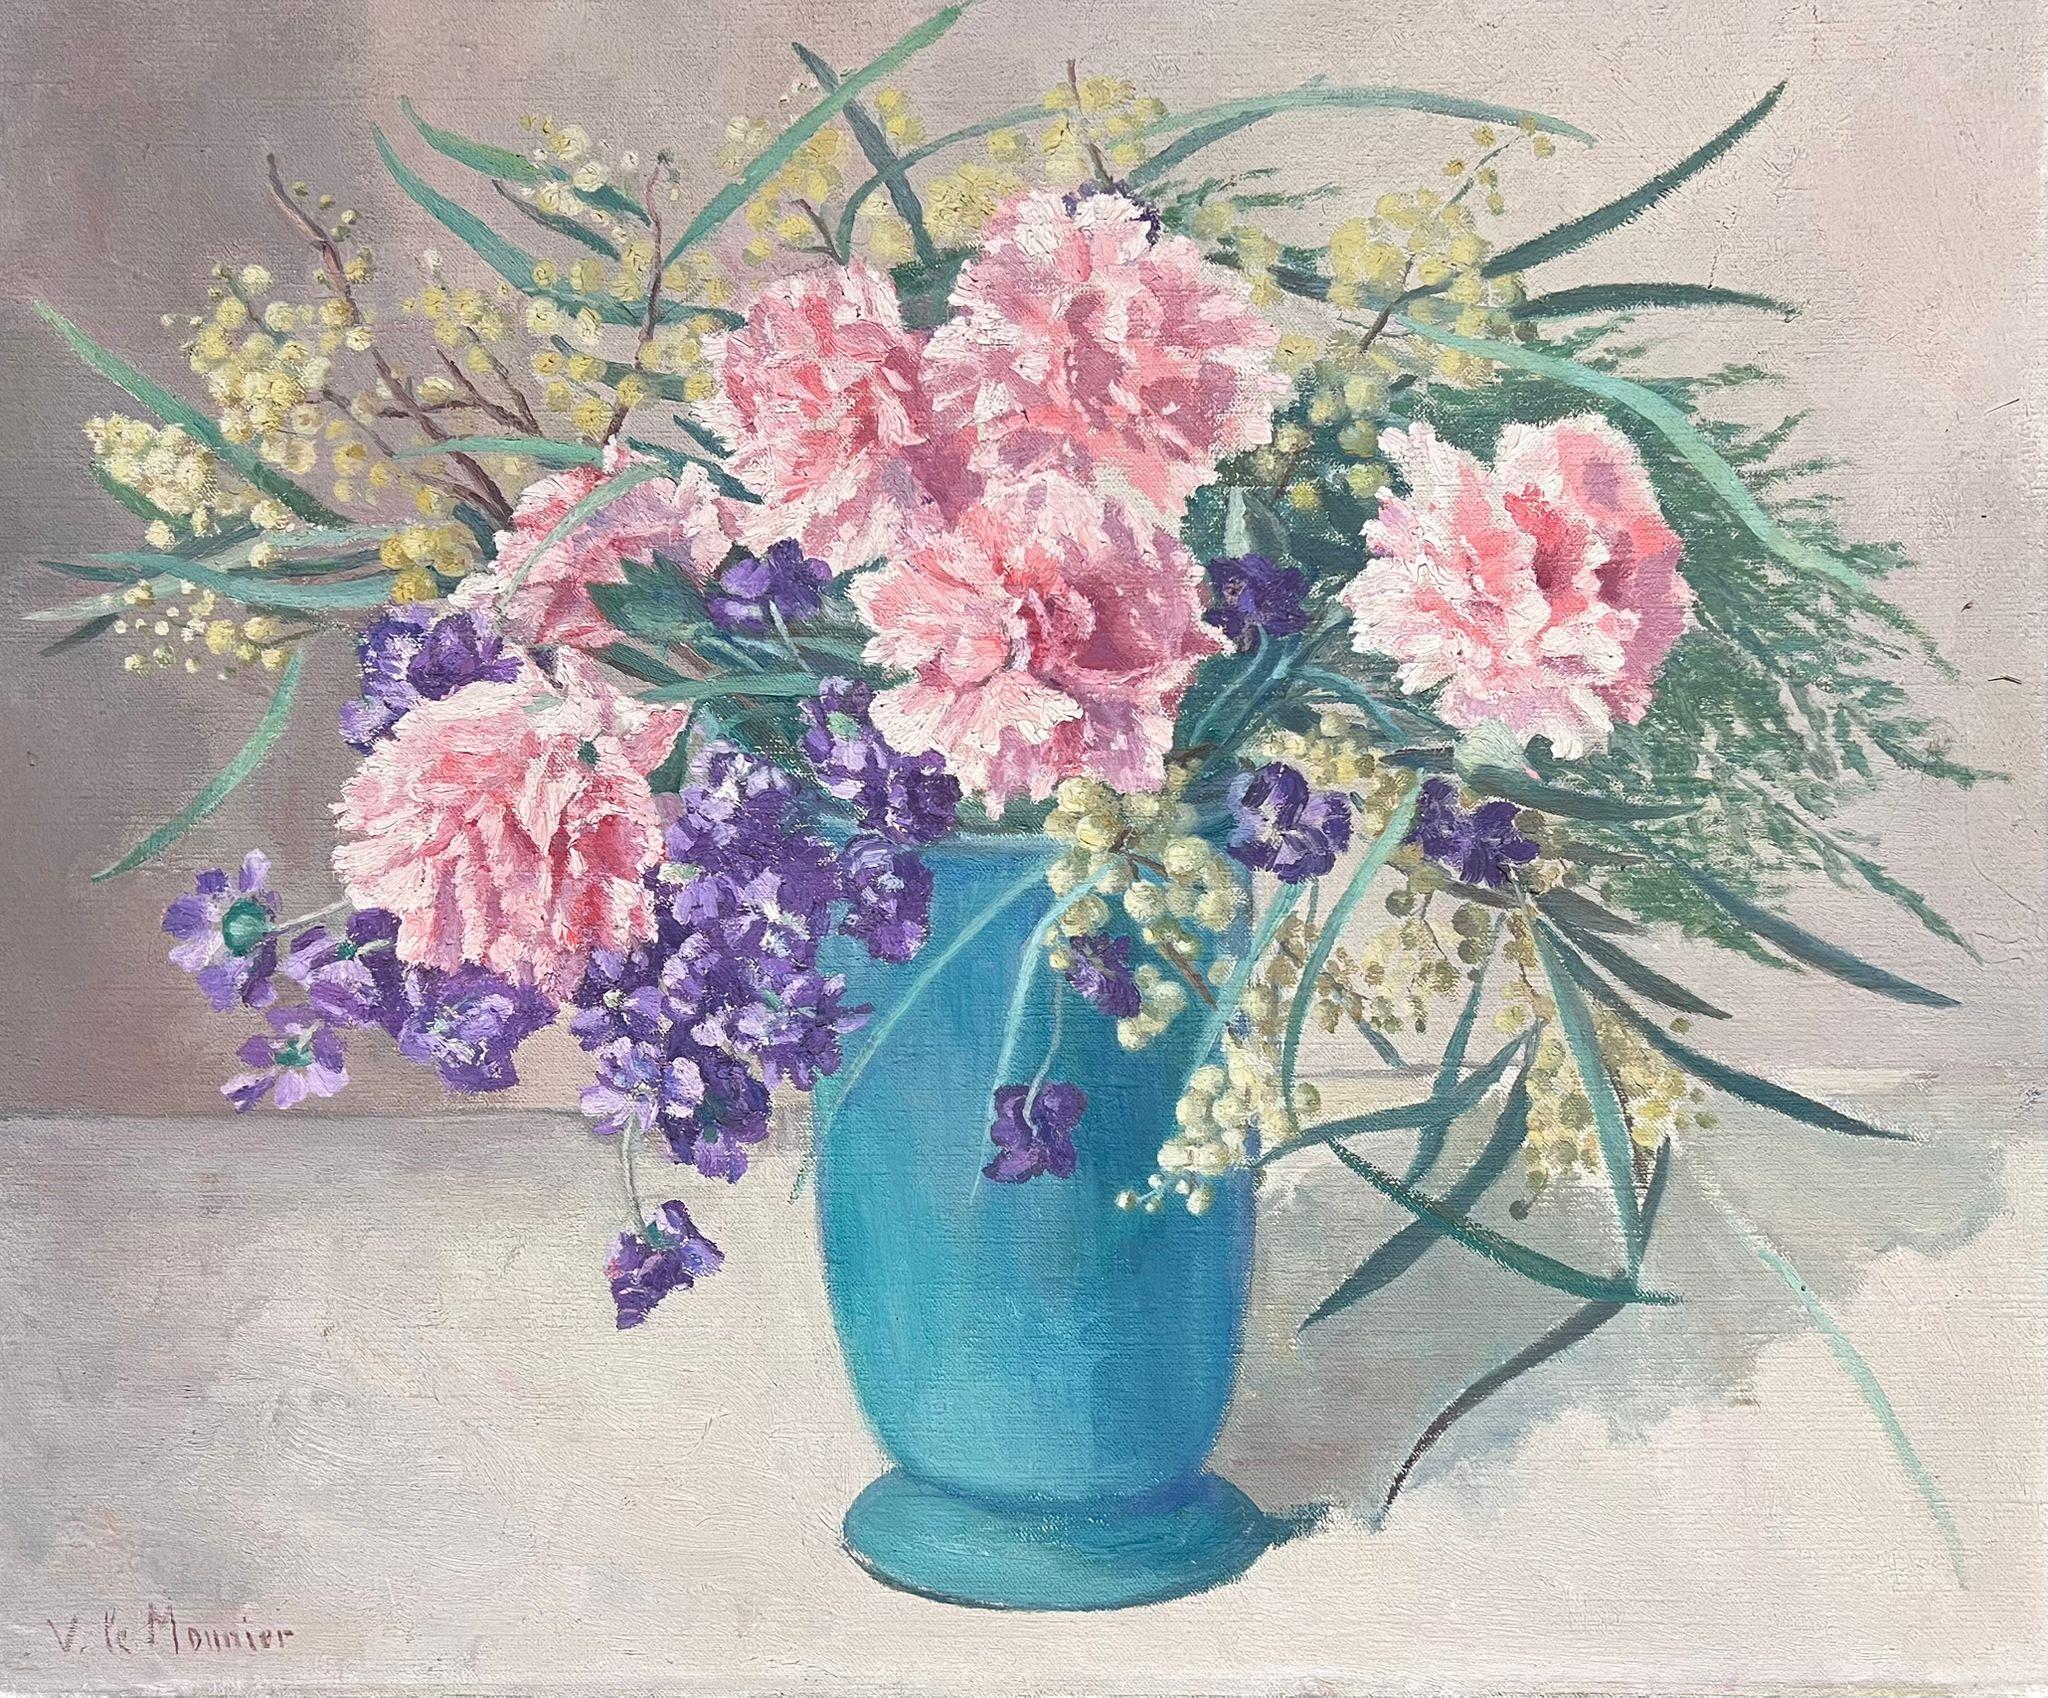 Flowers roses dans un vase bleu turquoise signé, années 1950